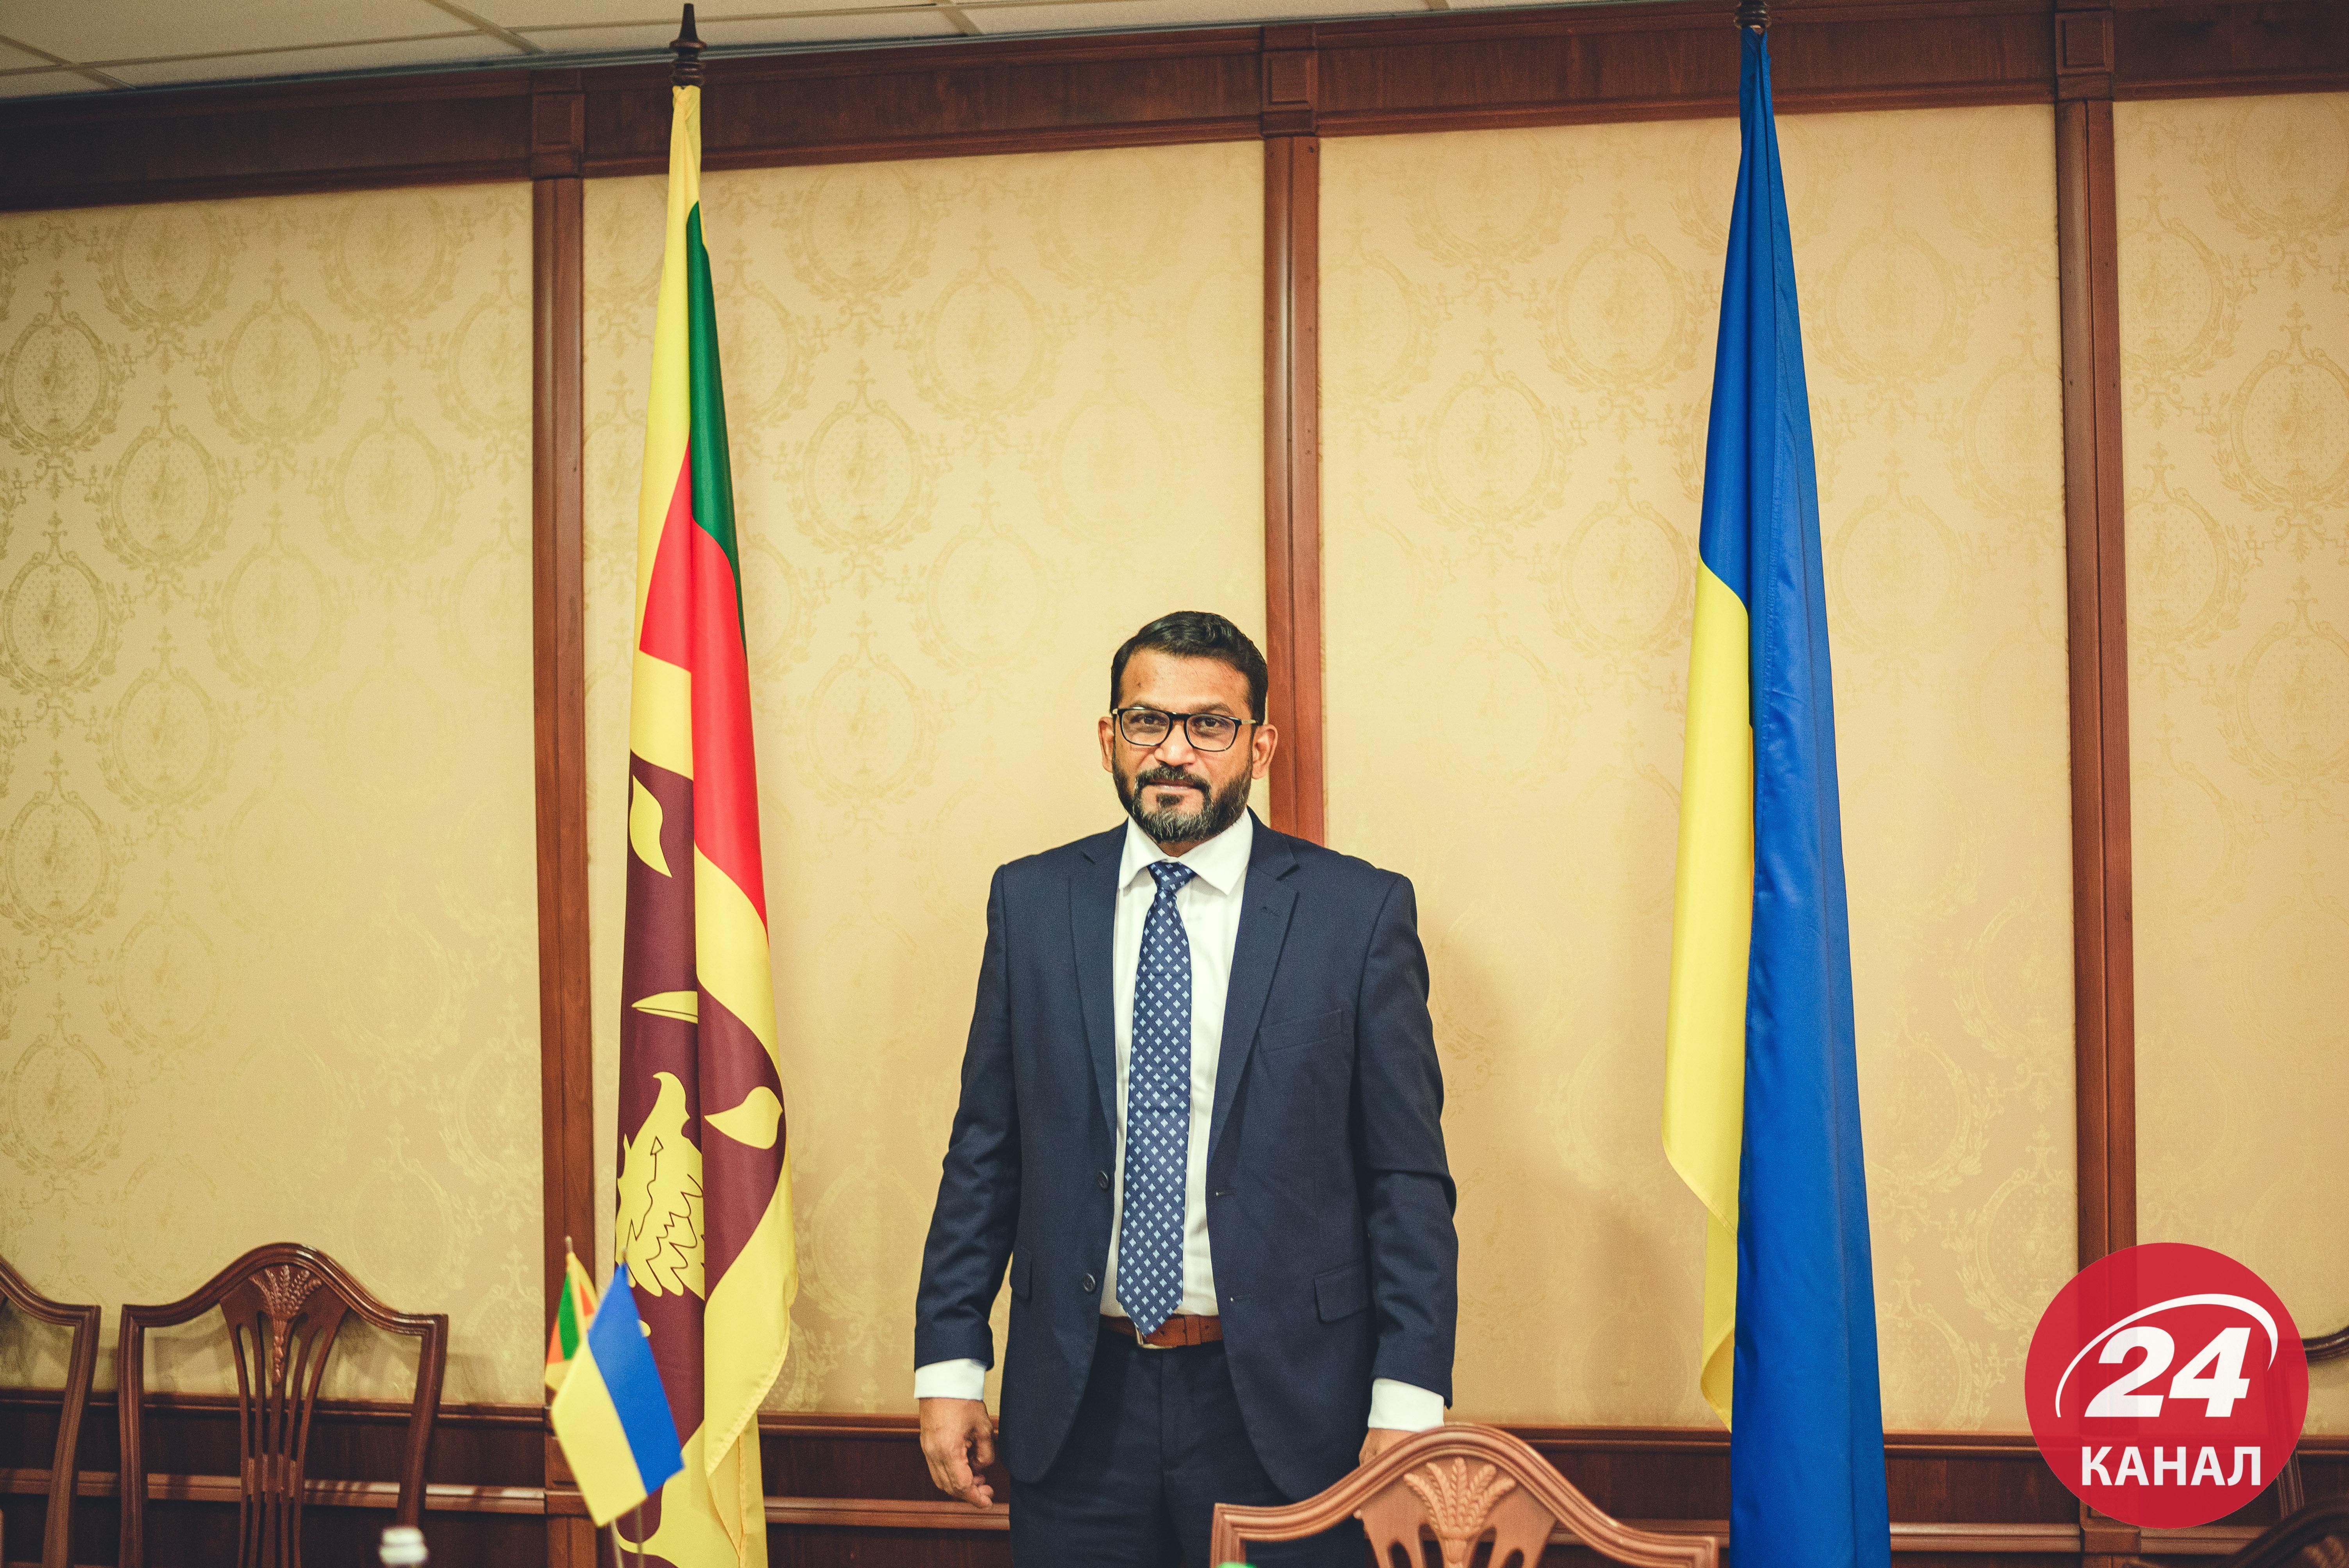 Жизнь после коронавируса и правила для украинского бизнеса: интересные факты о Шри-Ланке